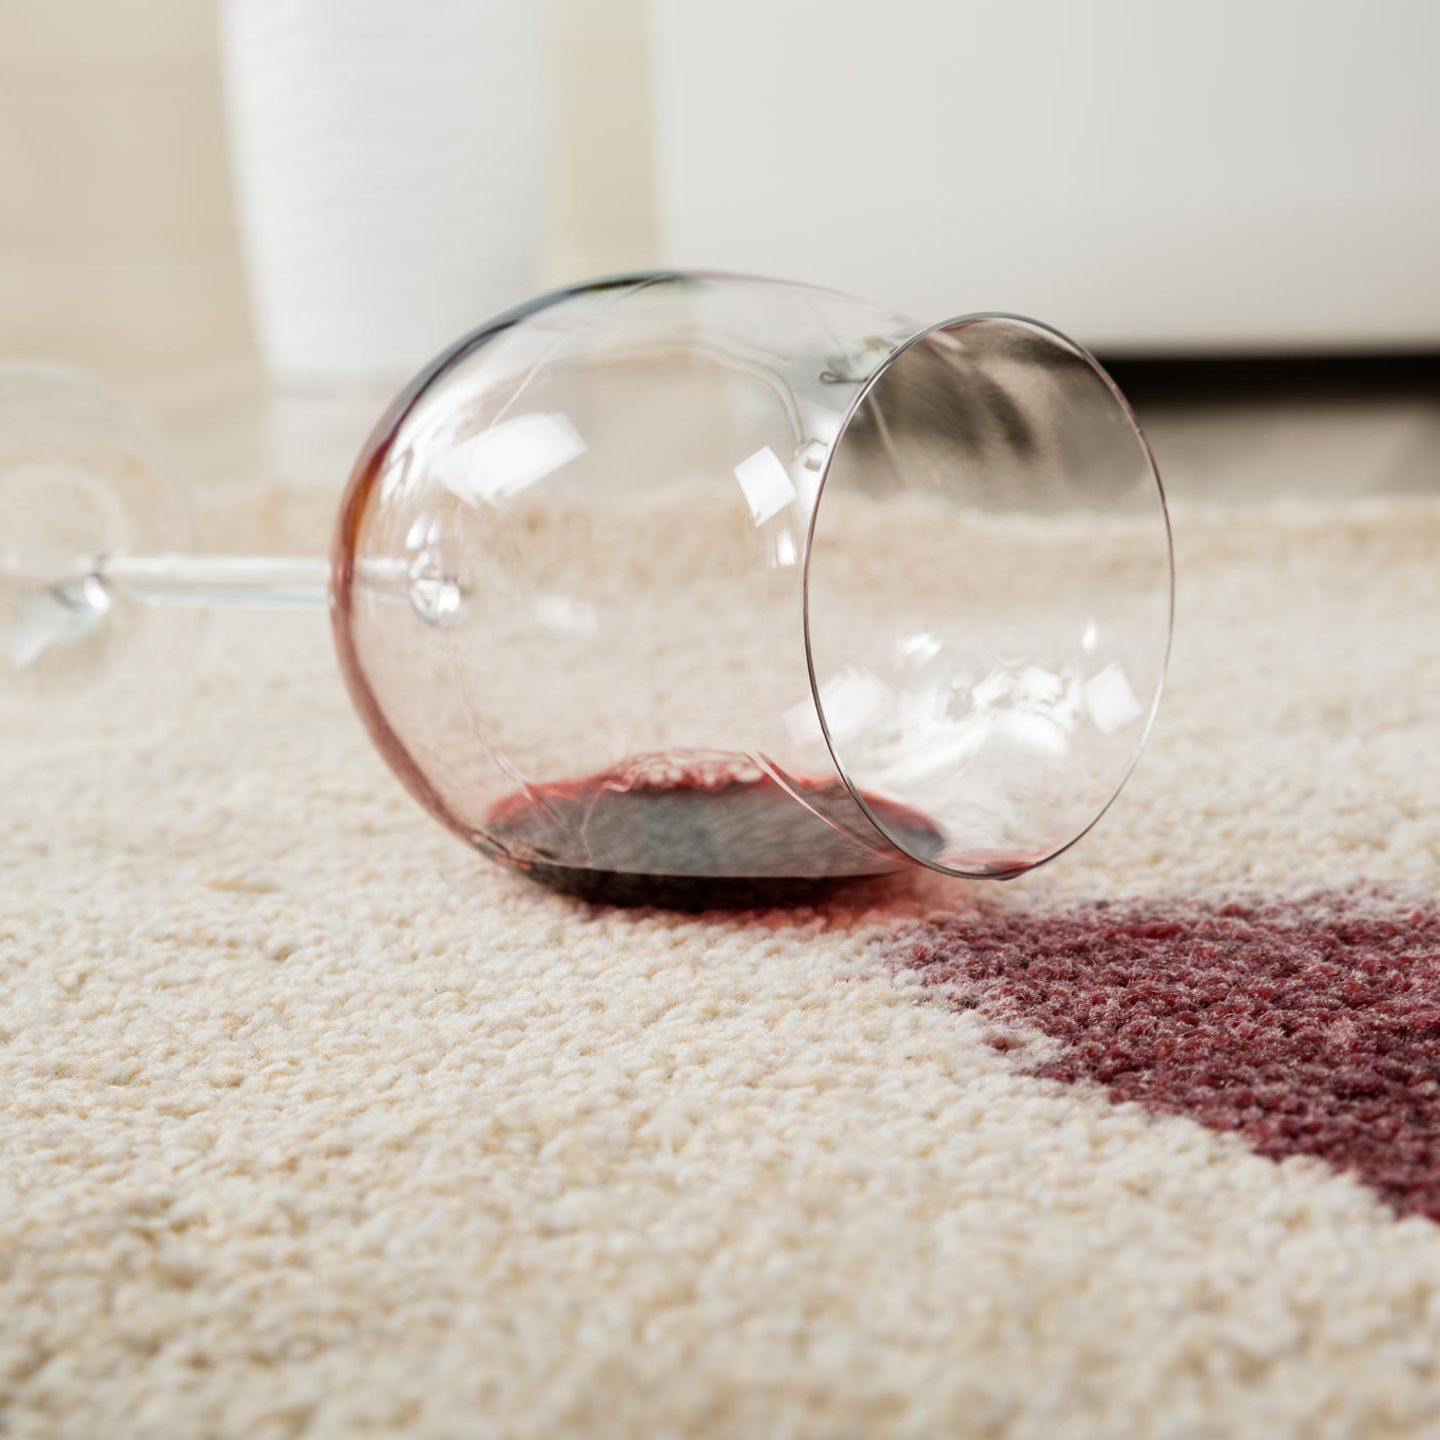 Oh Schreck ein Fleck: Ein umgefallenes Rotweinglas auf einem hellen Teppich